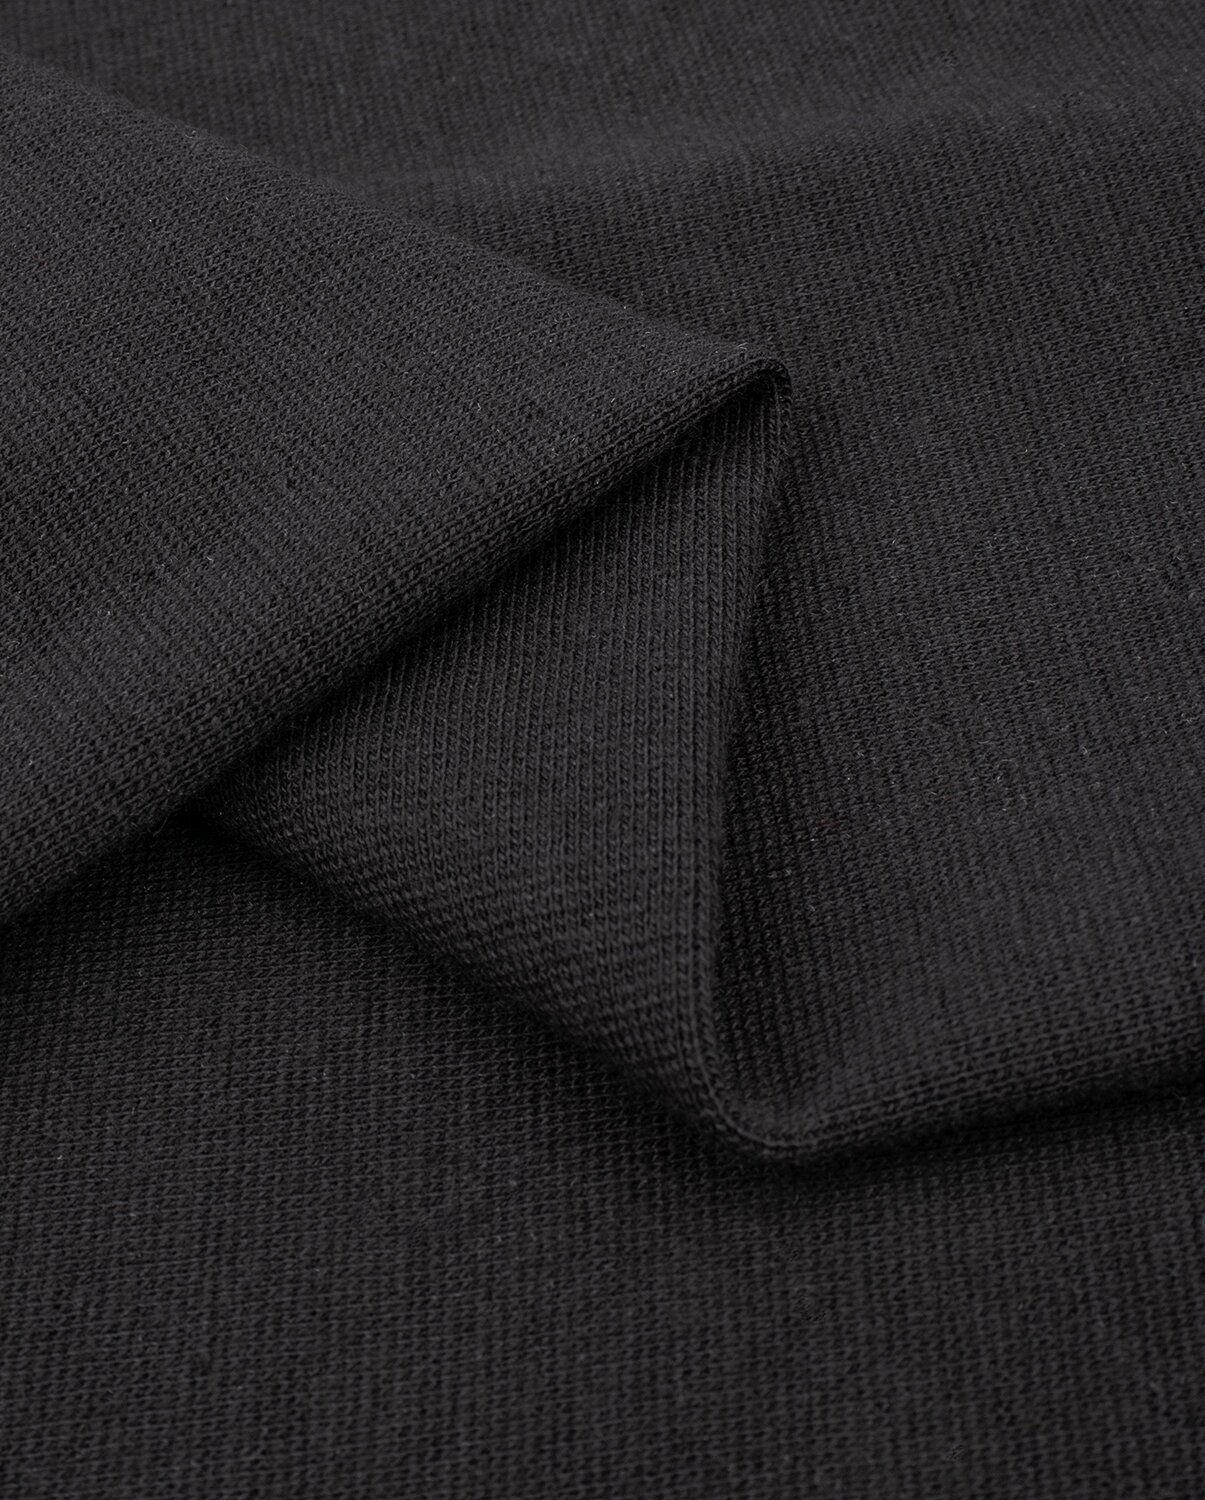 Ткань для шитья и рукоделия Рибана с лайкрой чулок 1 м * 190 см, черный 001